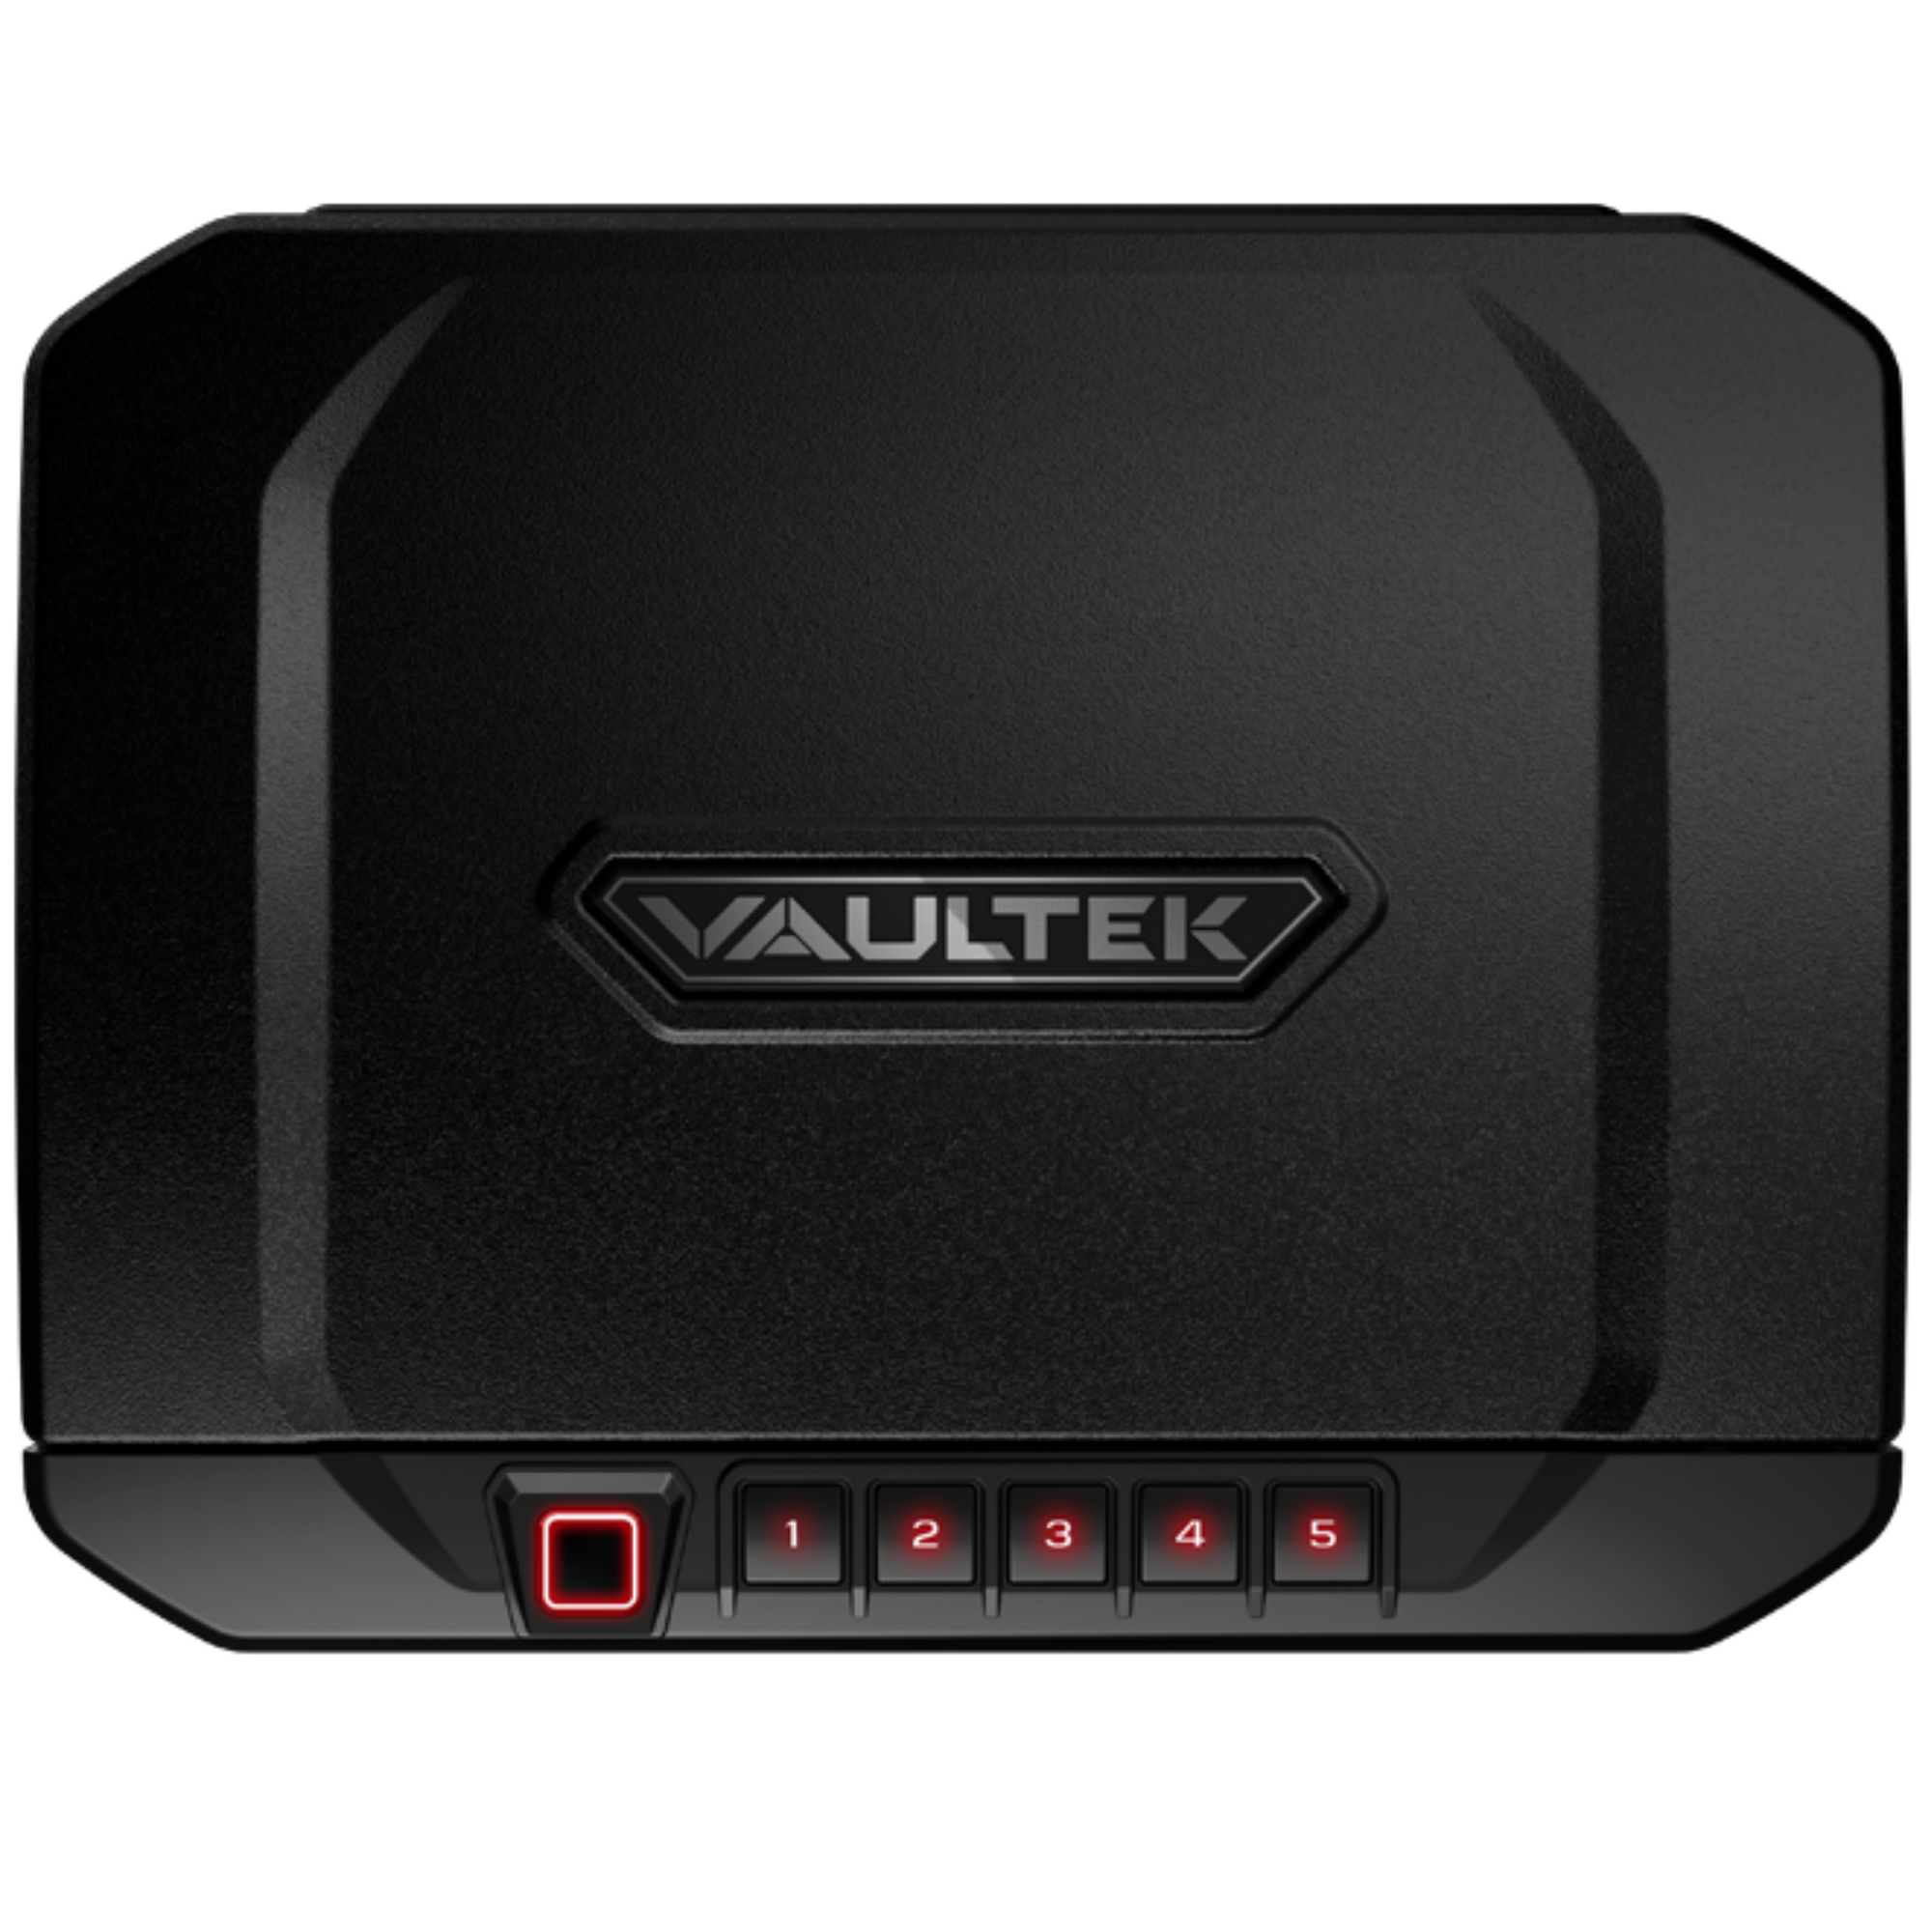 VAULTEK | VT20i - Bluetooth - Biometric | Liberty Safe Norcal.